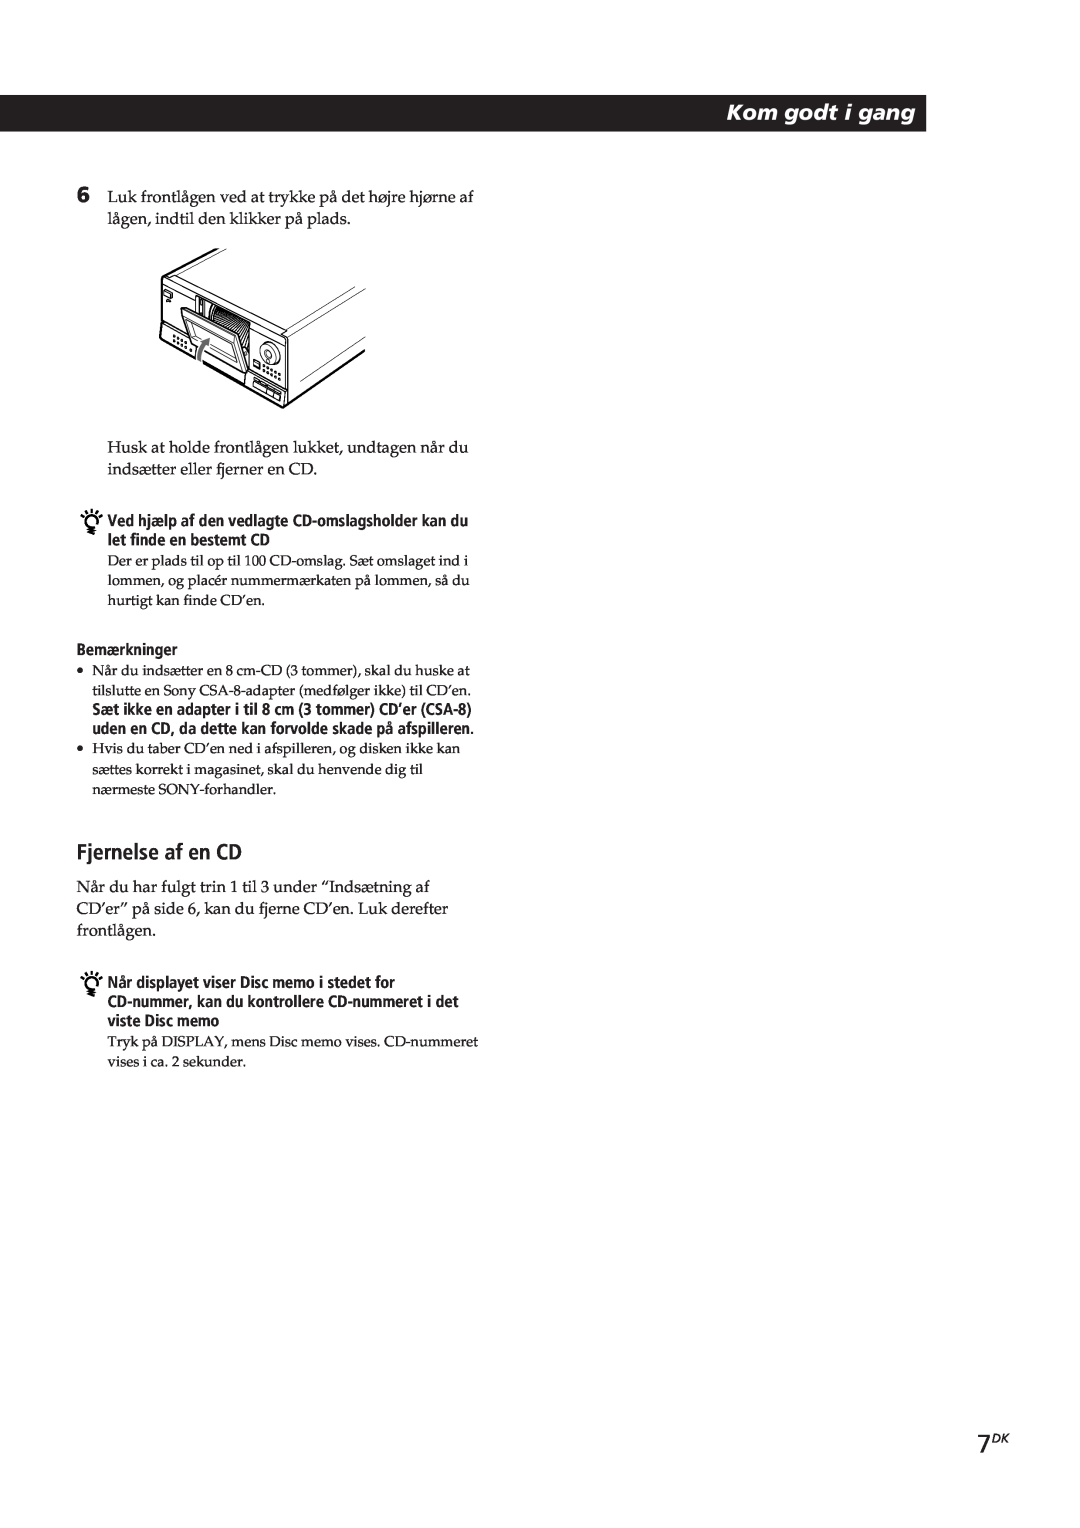 Sony CDP-CX153 manual Kom godt i gang, Fjernelse af en CD, Bemærkninger 